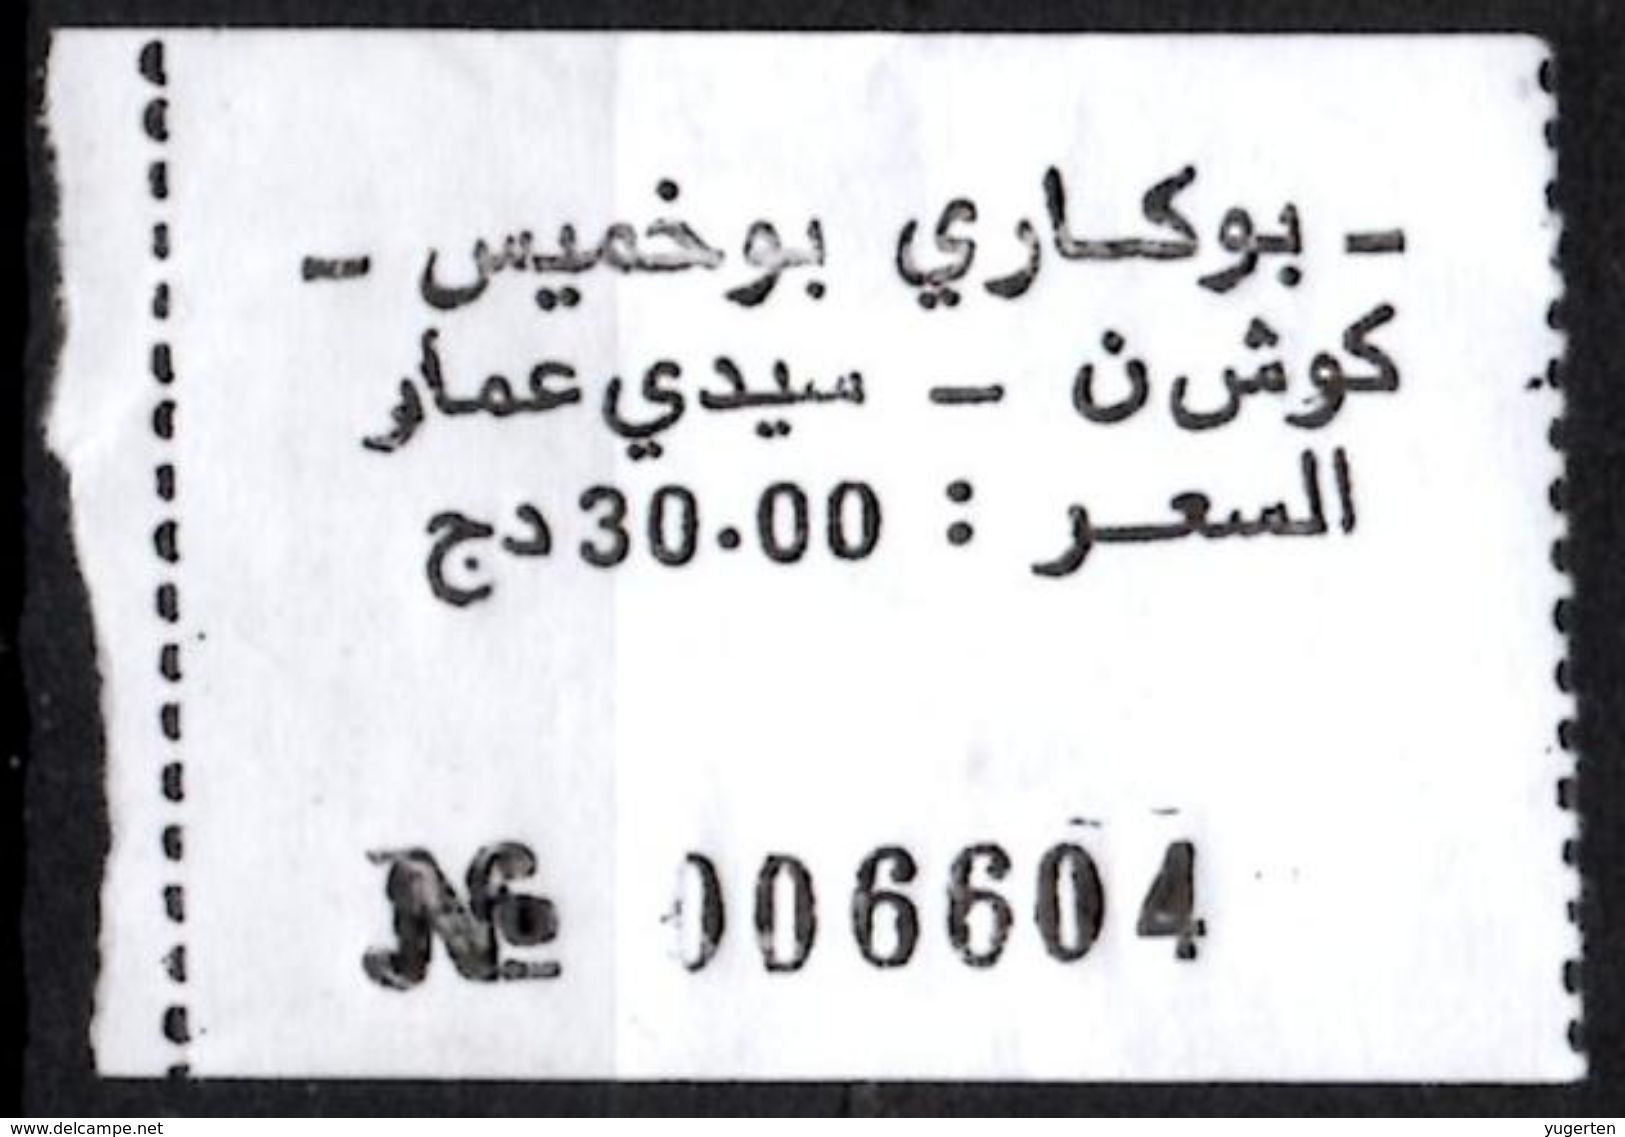 Algeria Ticket Bus Transport Urbain - Annaba Trajet Kouche / Sidi Ammar Billete De Autobús Biglietto Dell'autobus - Mundo